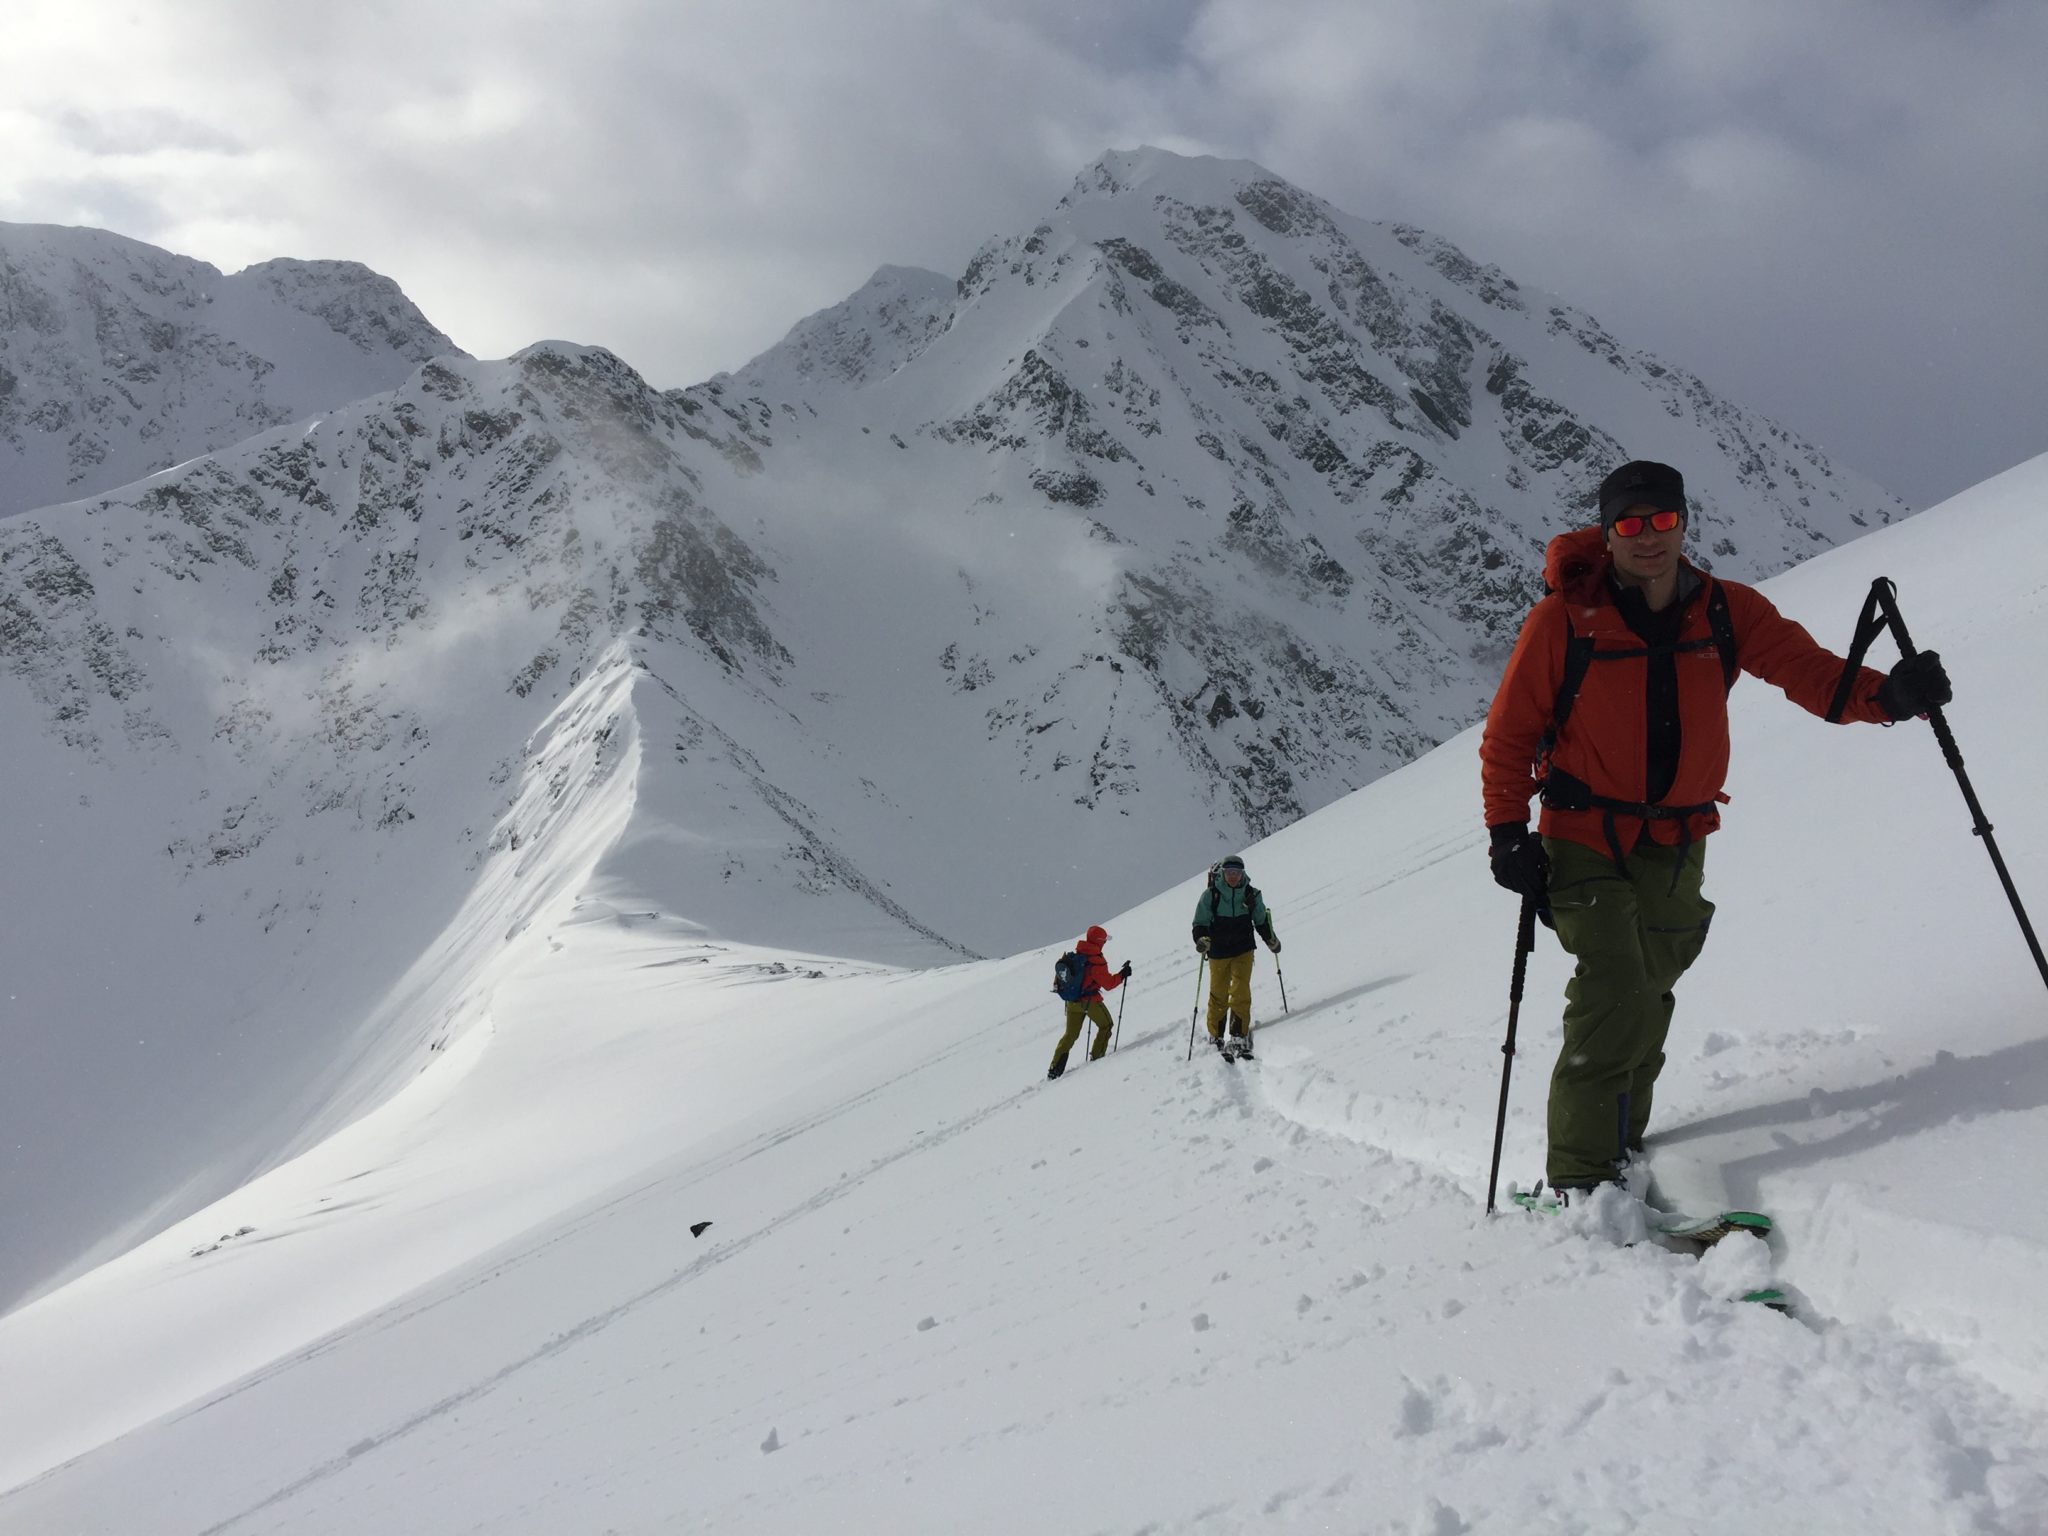 Alpine skitouring in Lyngen. Photo: Mikal Nerberg / Lyngenguide